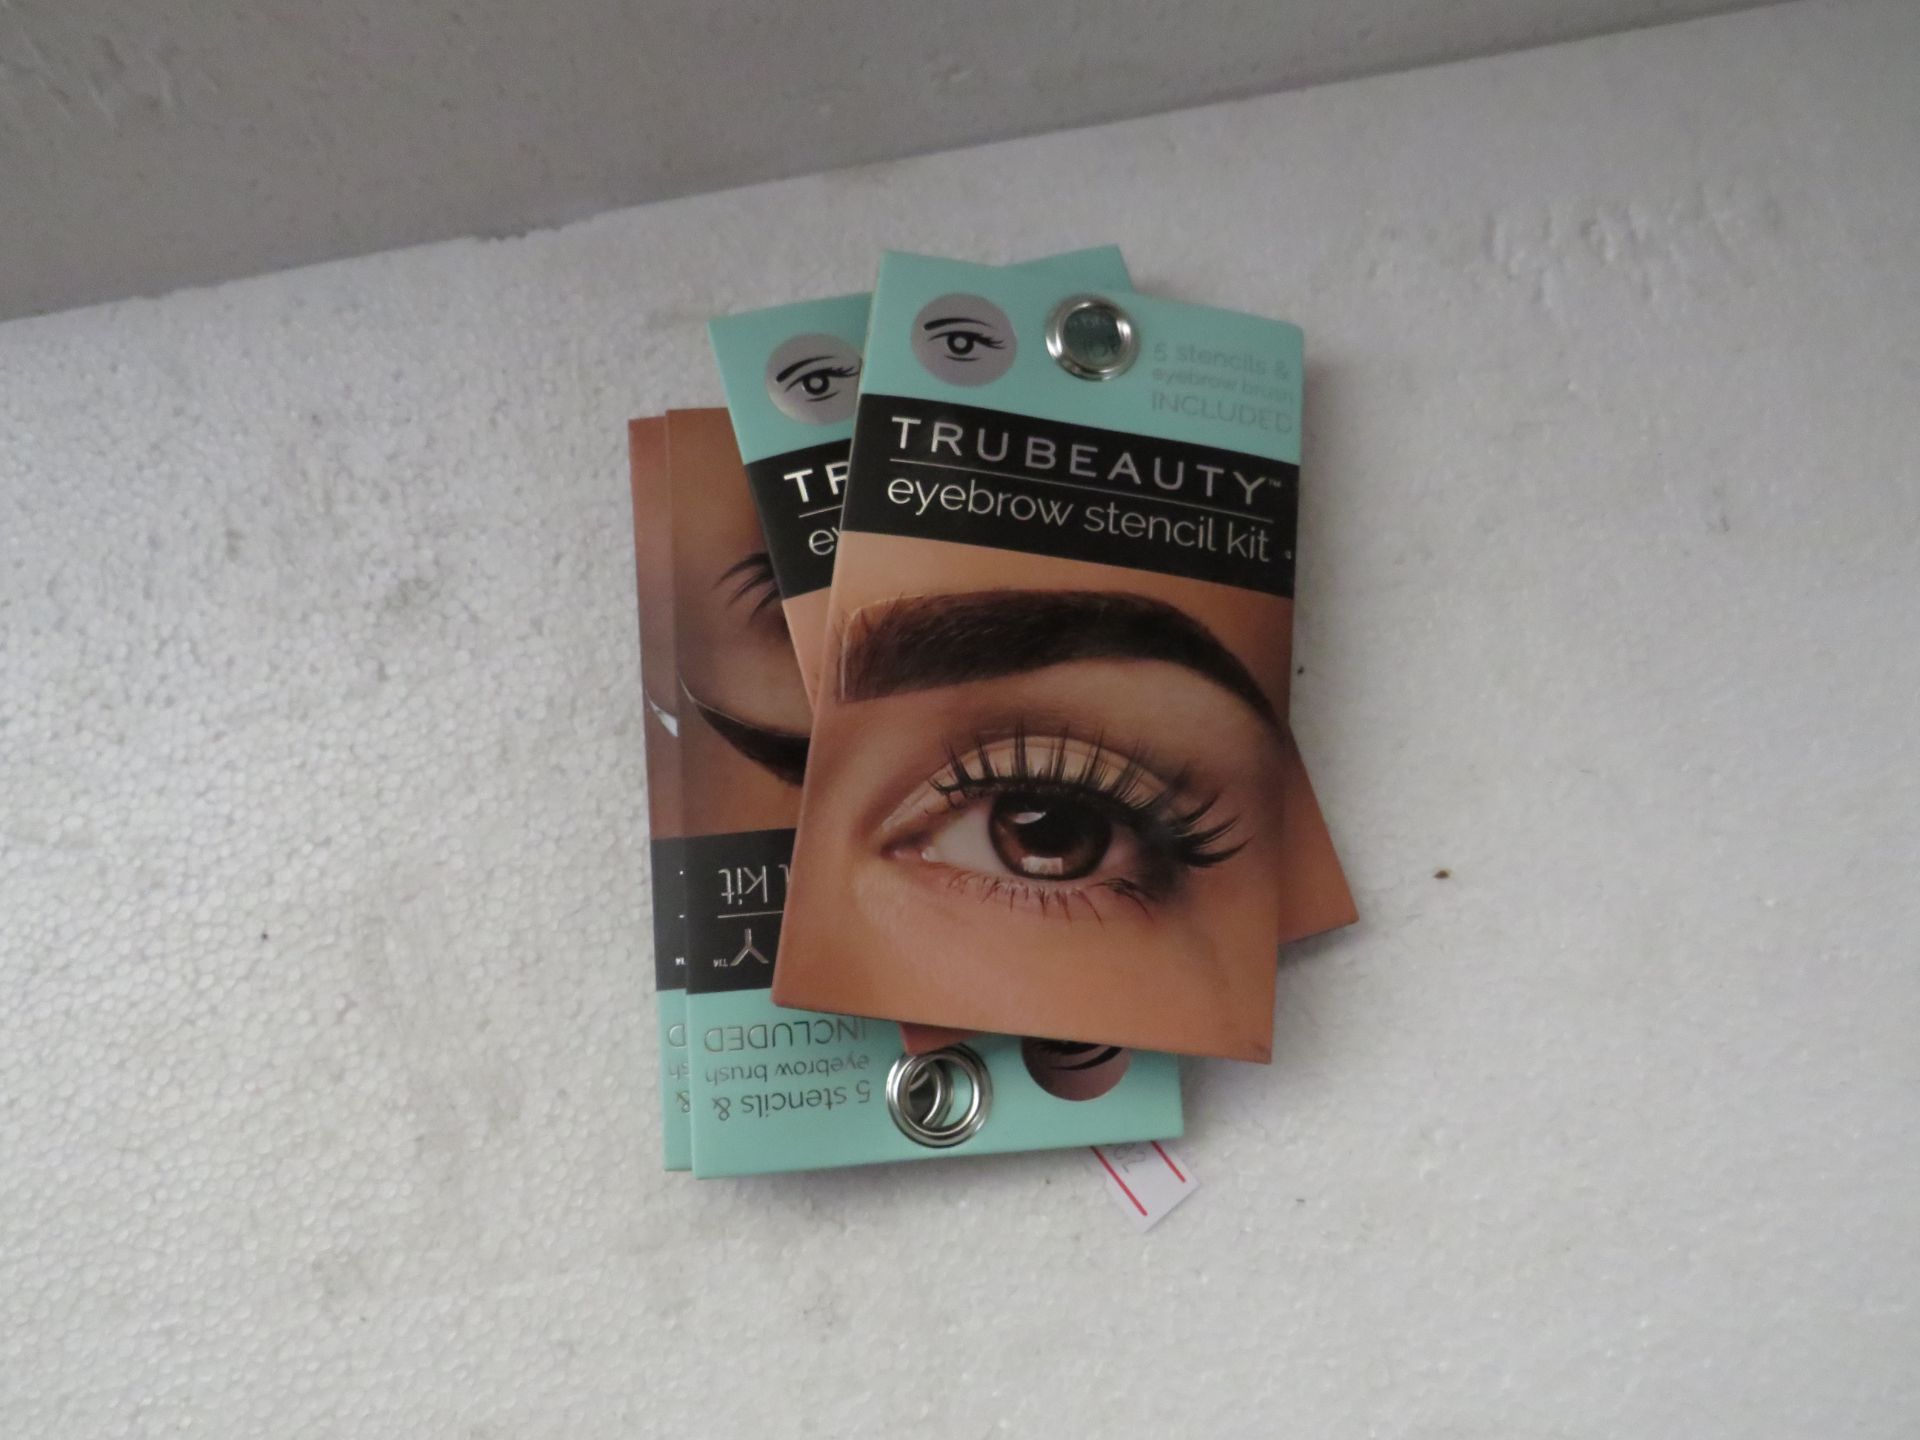 Approx 30x Tru Beauty Eyebrow Stencil Kit - New & Sealed